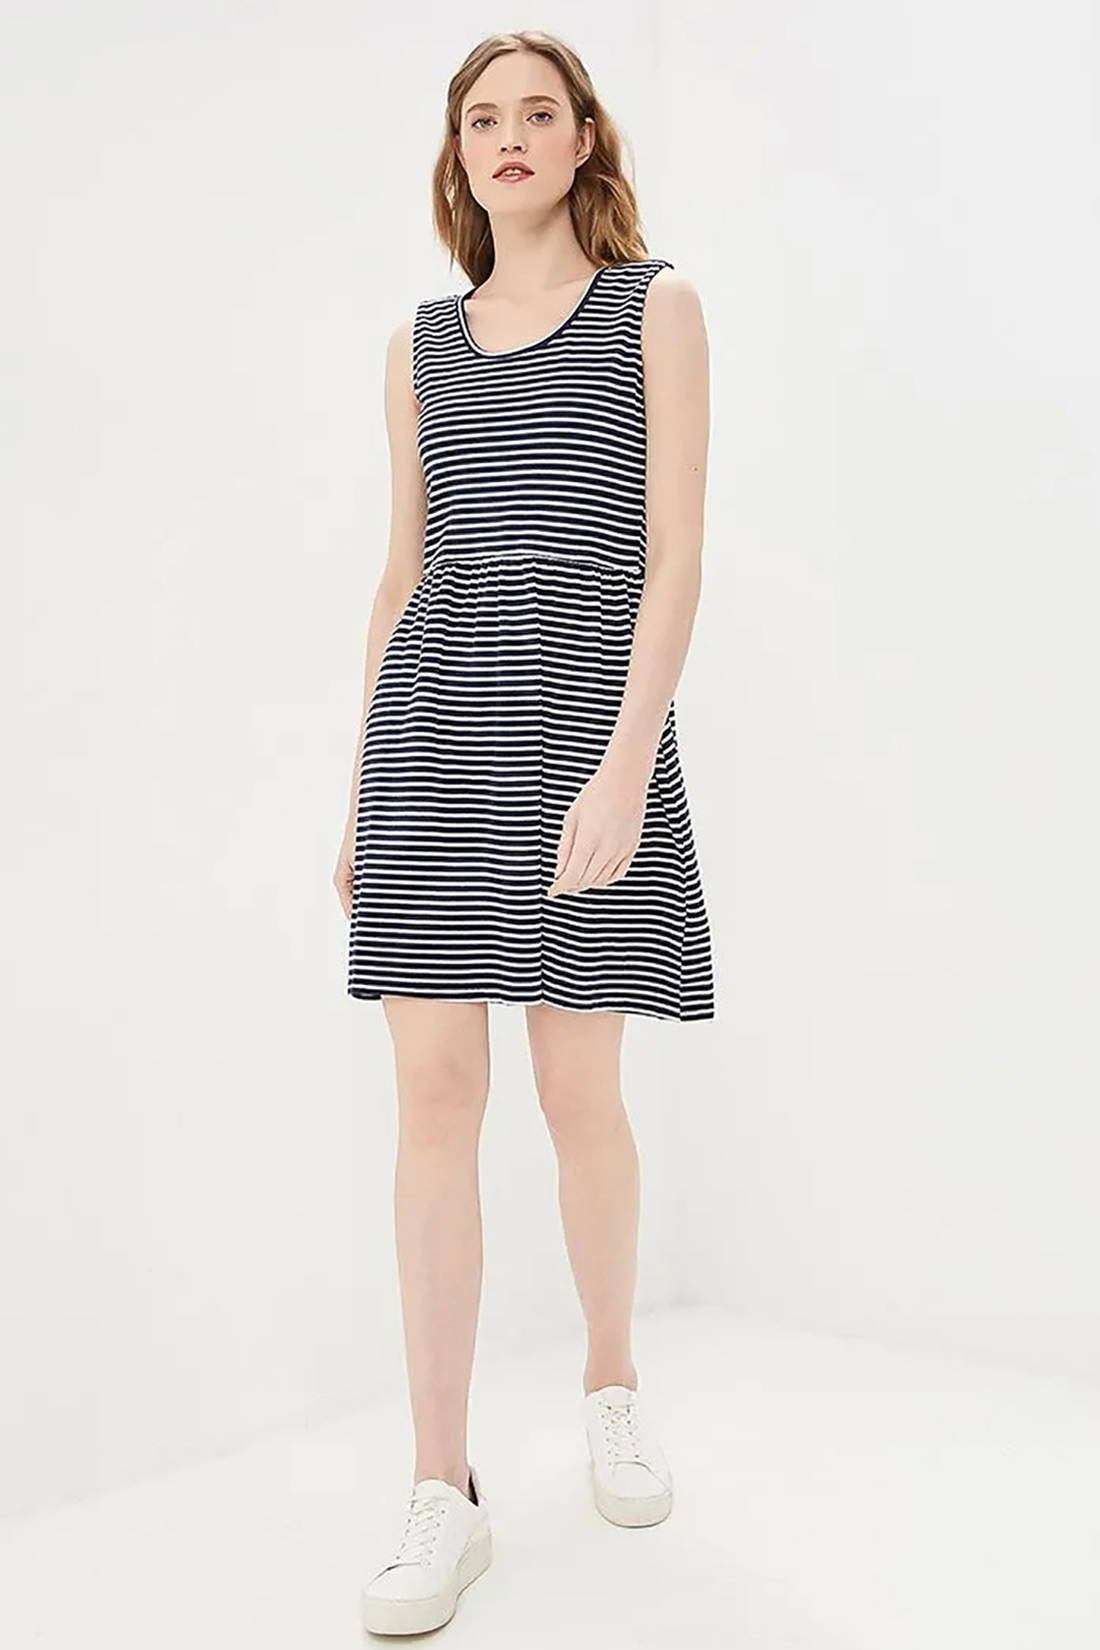 Платье в тонкую полоску (арт. baon B459099), размер L, цвет dark navy striped#синий Платье в тонкую полоску (арт. baon B459099) - фото 1